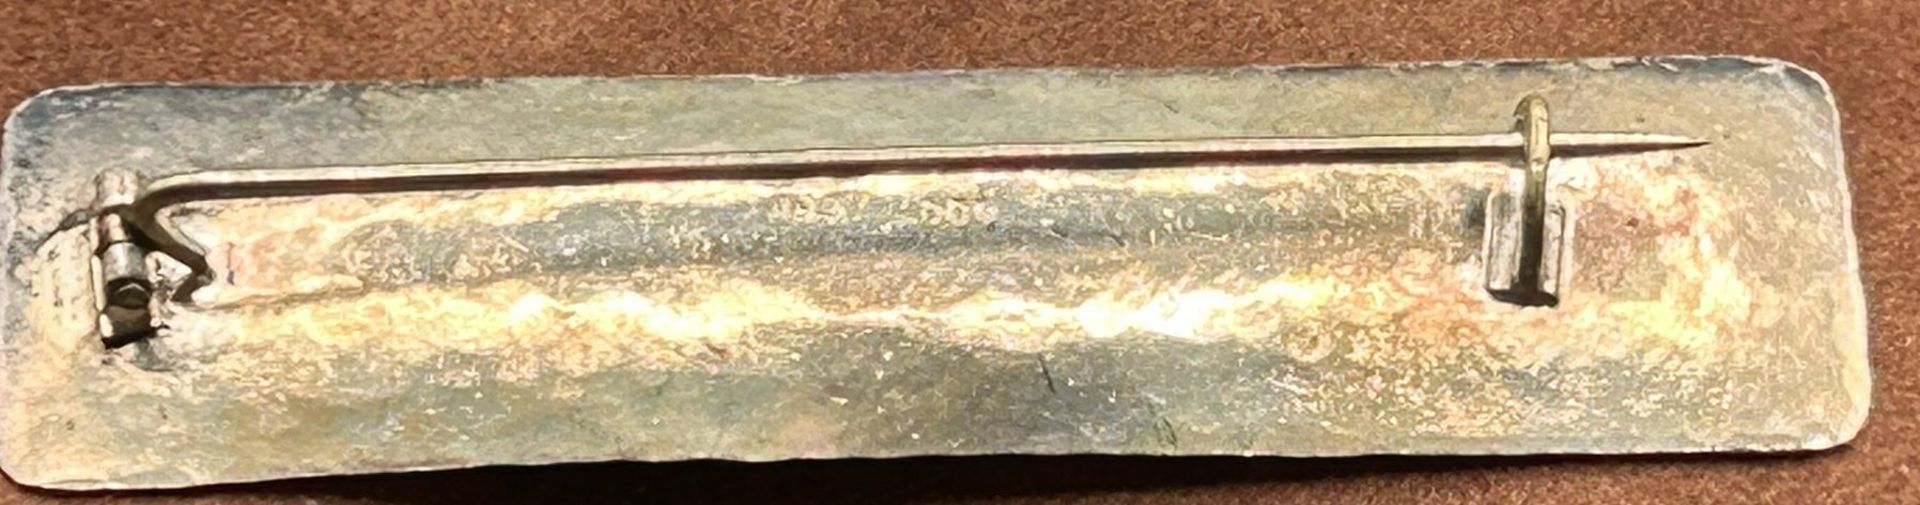 Silberbrosche GFK -900- Silber, 7,1 gr., B-6,5  cm - Bild 2 aus 3